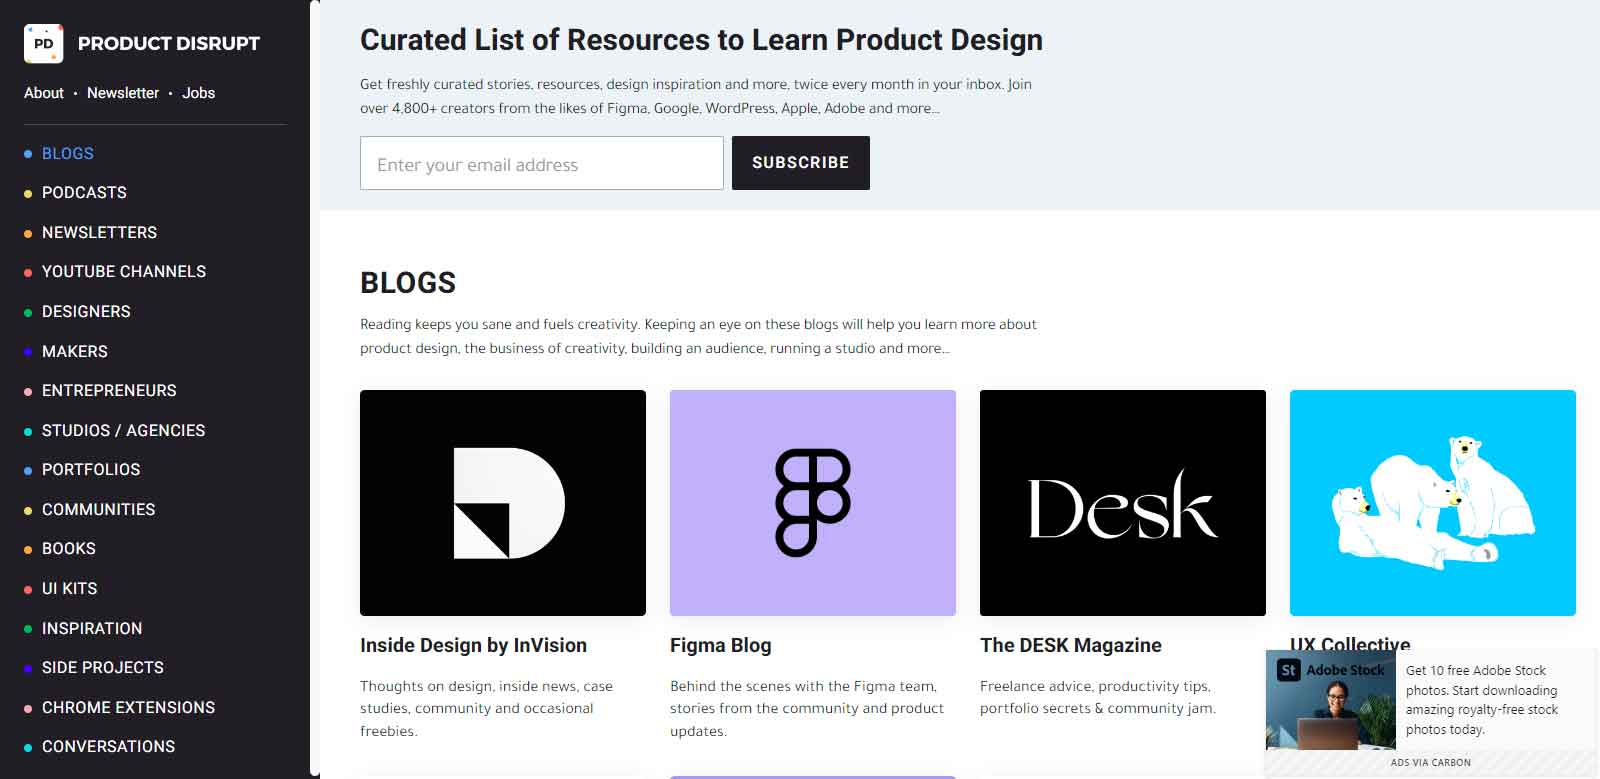 Product-Disrupt Web Designer Tools 